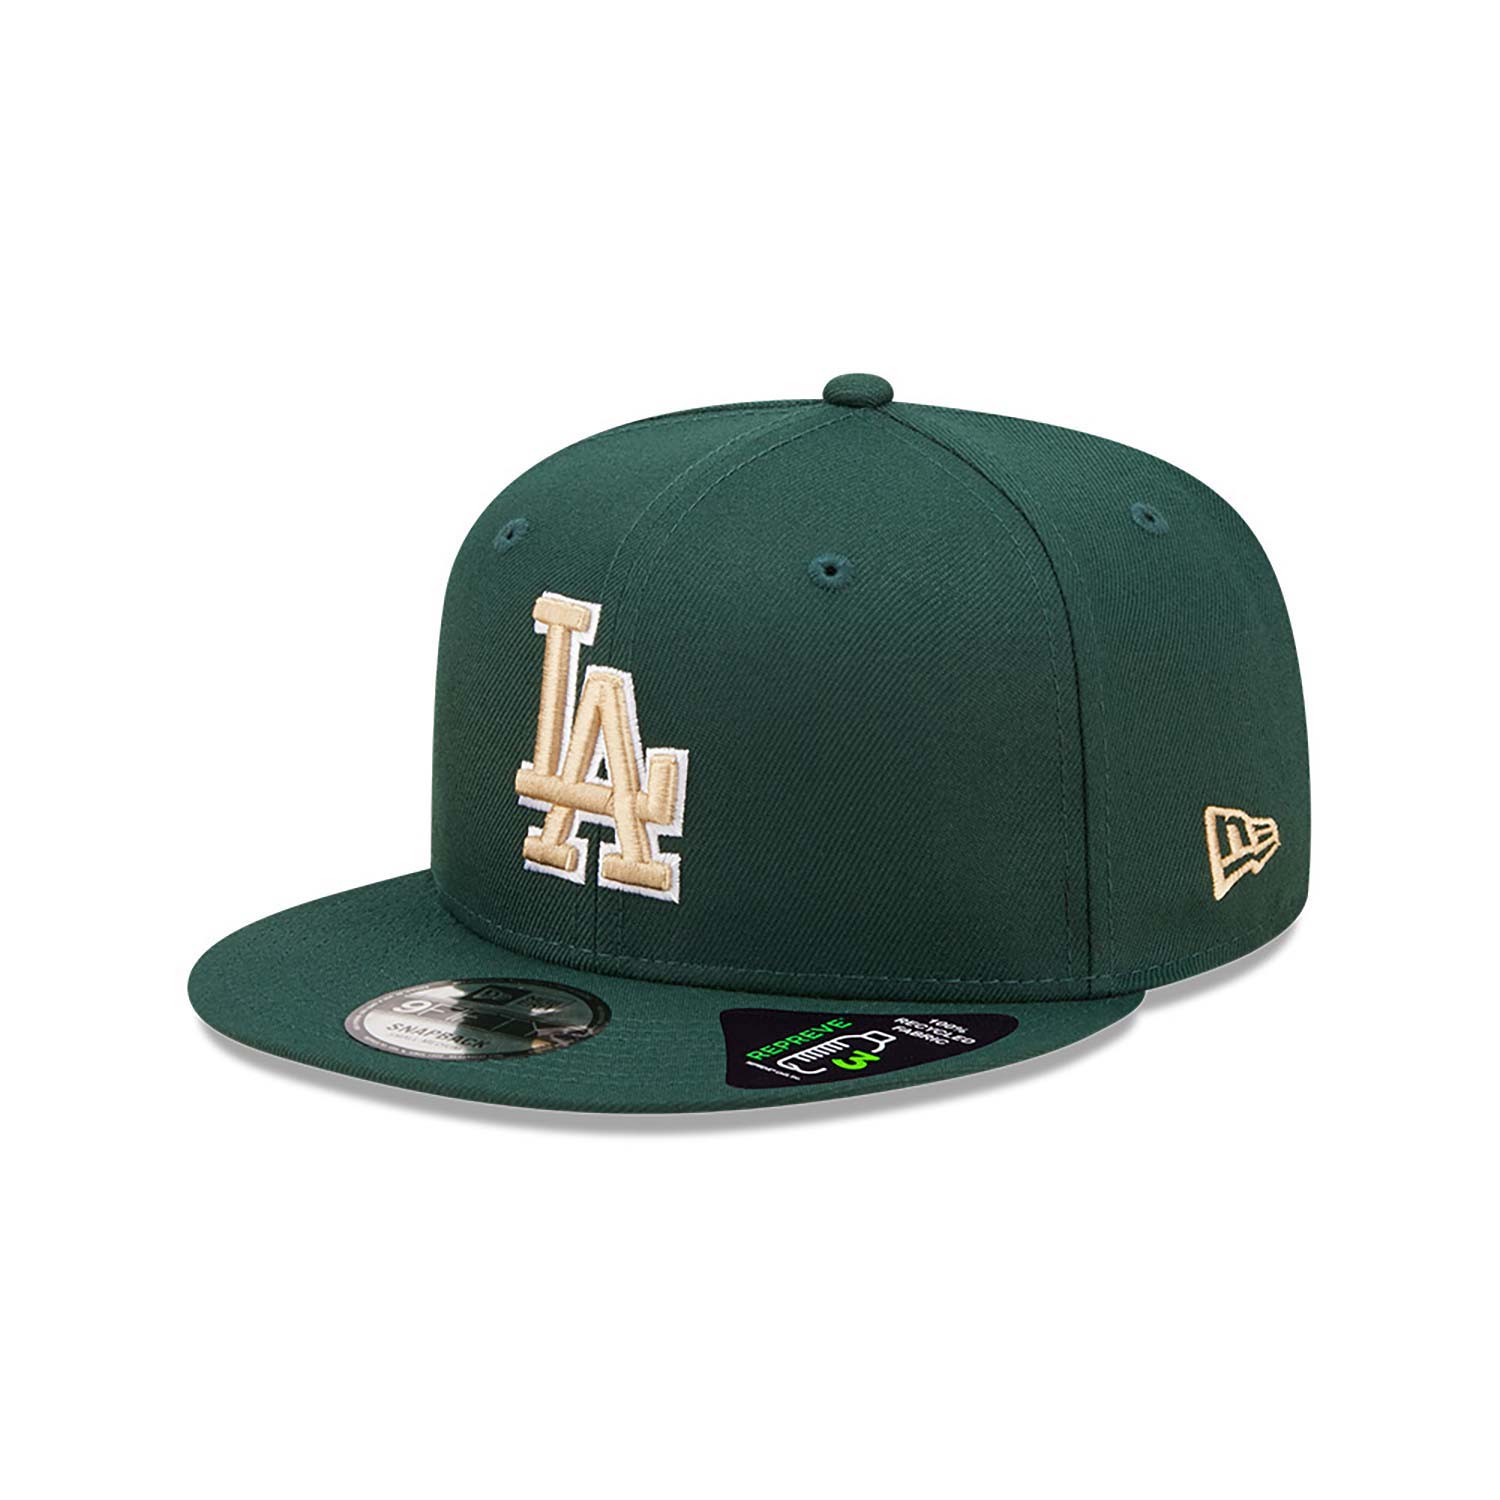 LA Dodgers Repreve Dark Green 9FIFTY Snapback Cap